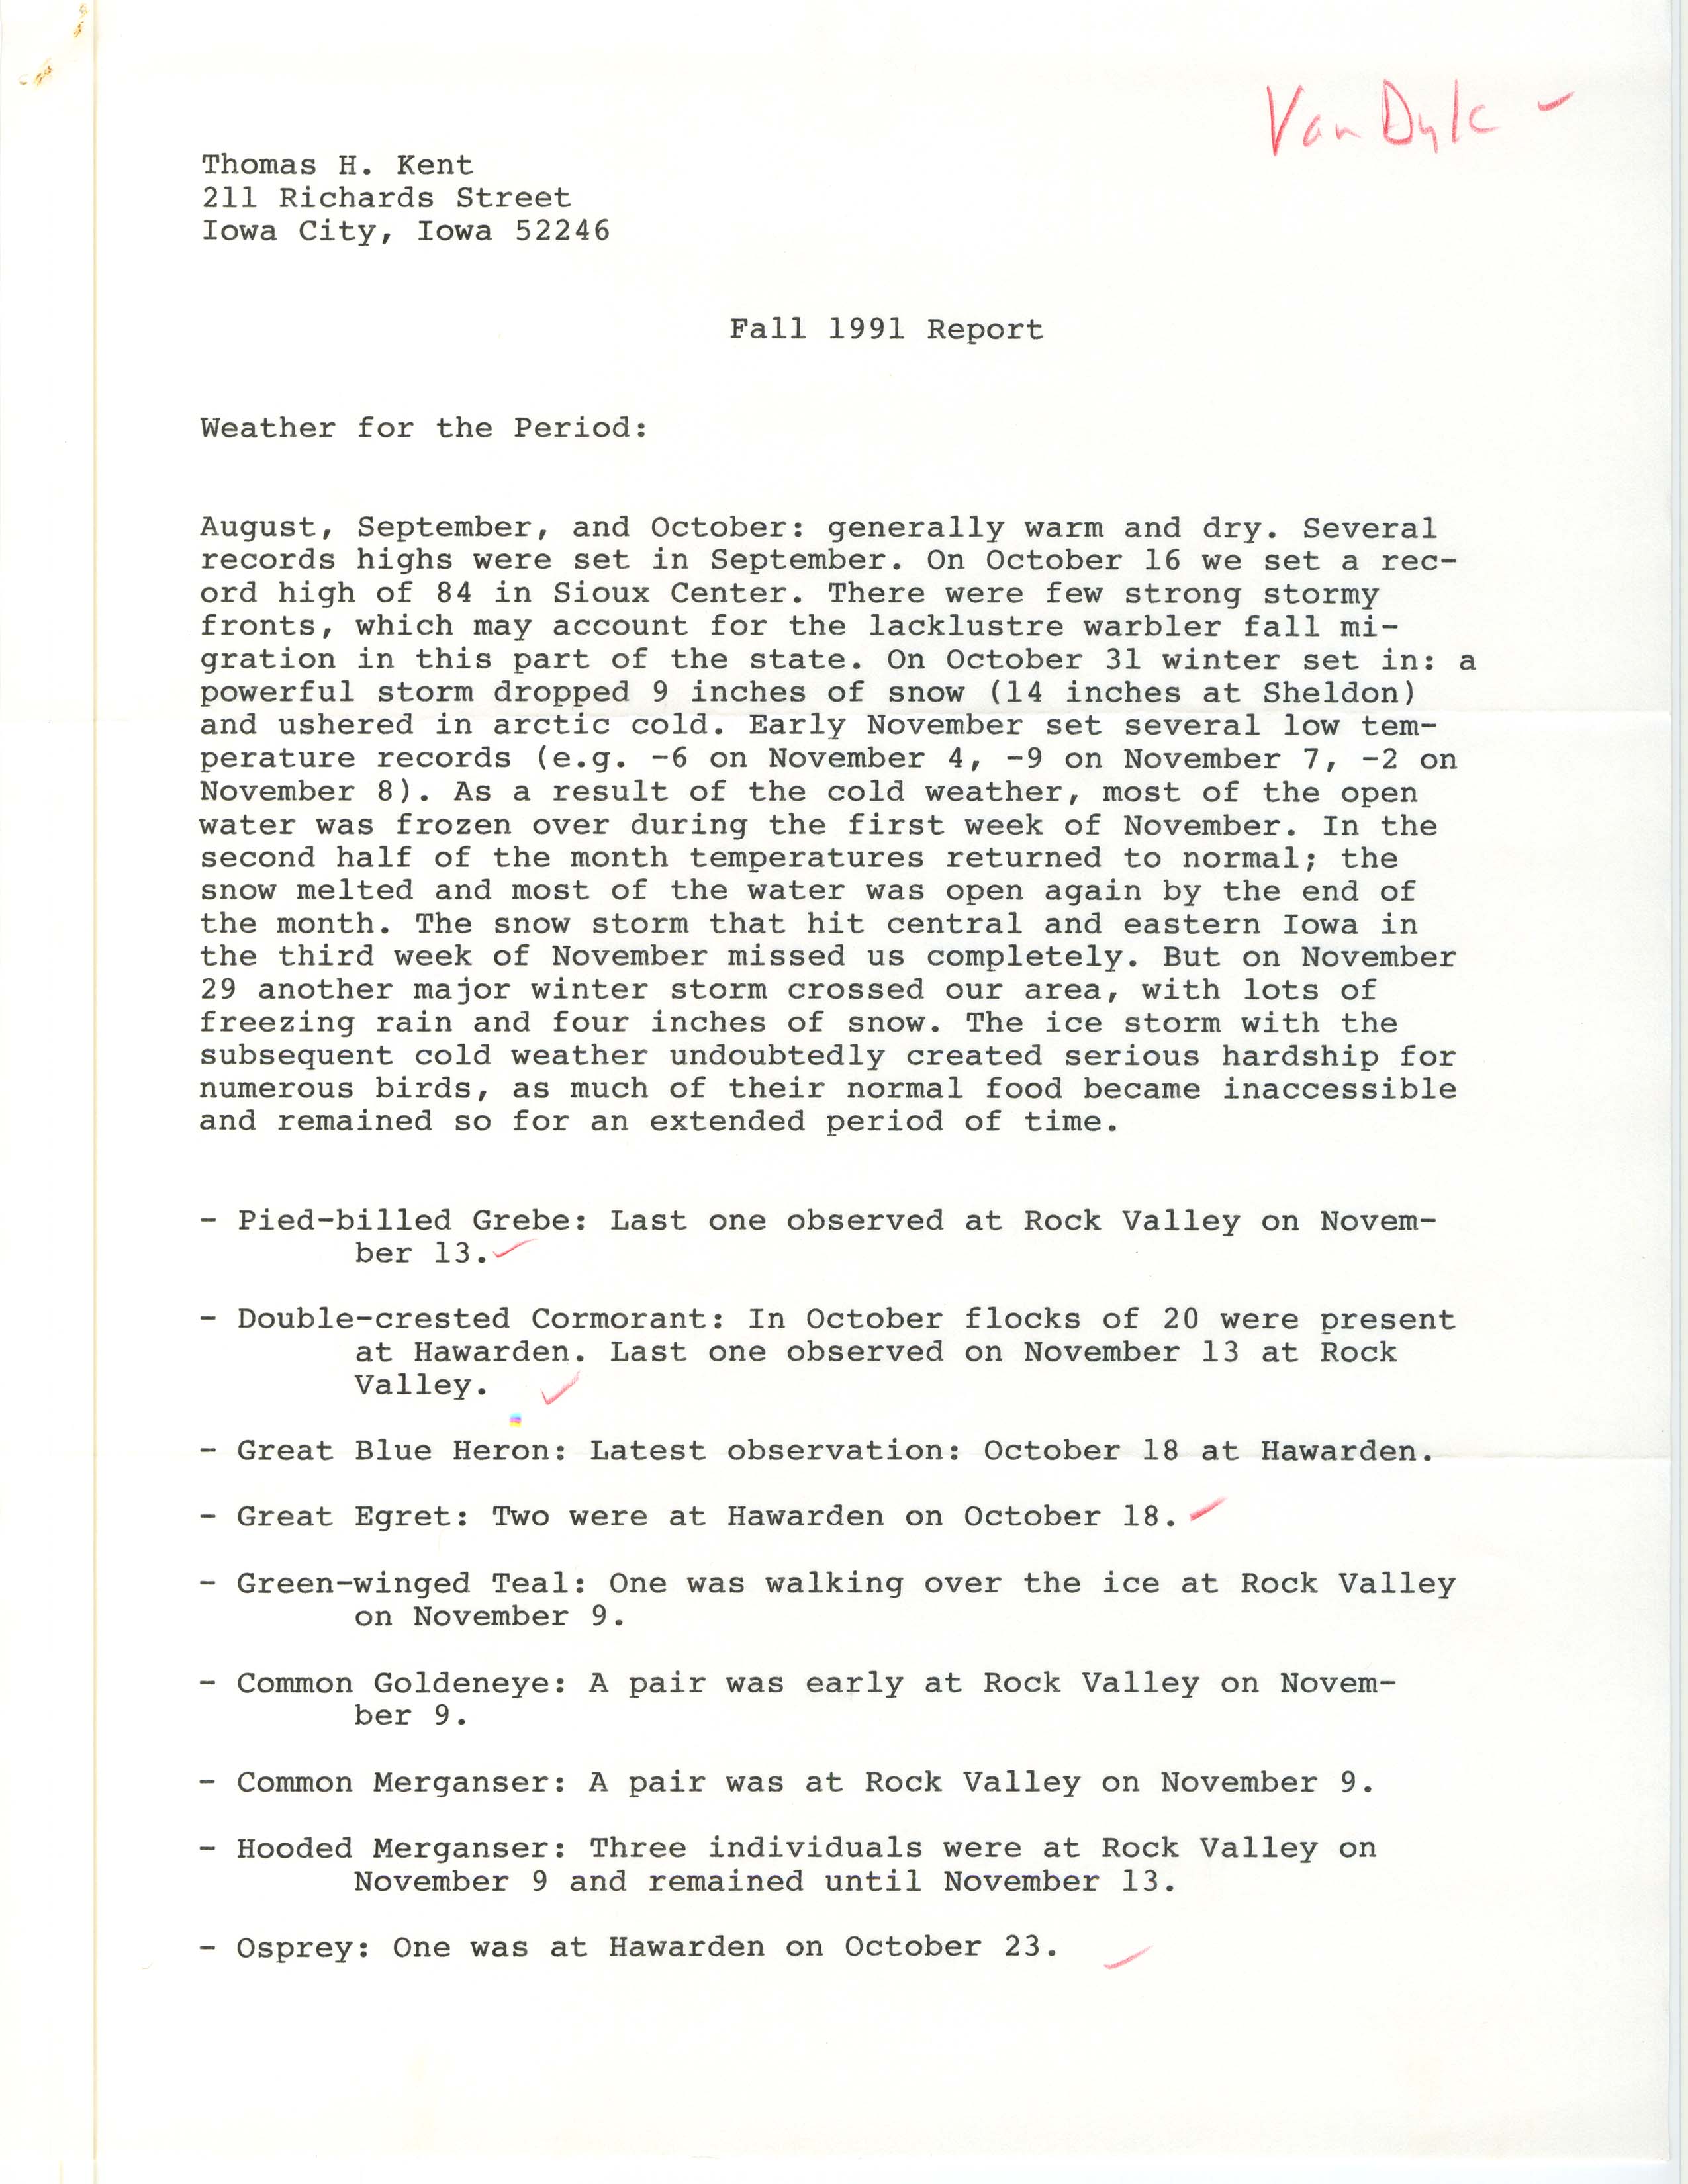 John Van Dyk letter to Thomas H. Kent regarding bird sightings, December 1, 1991